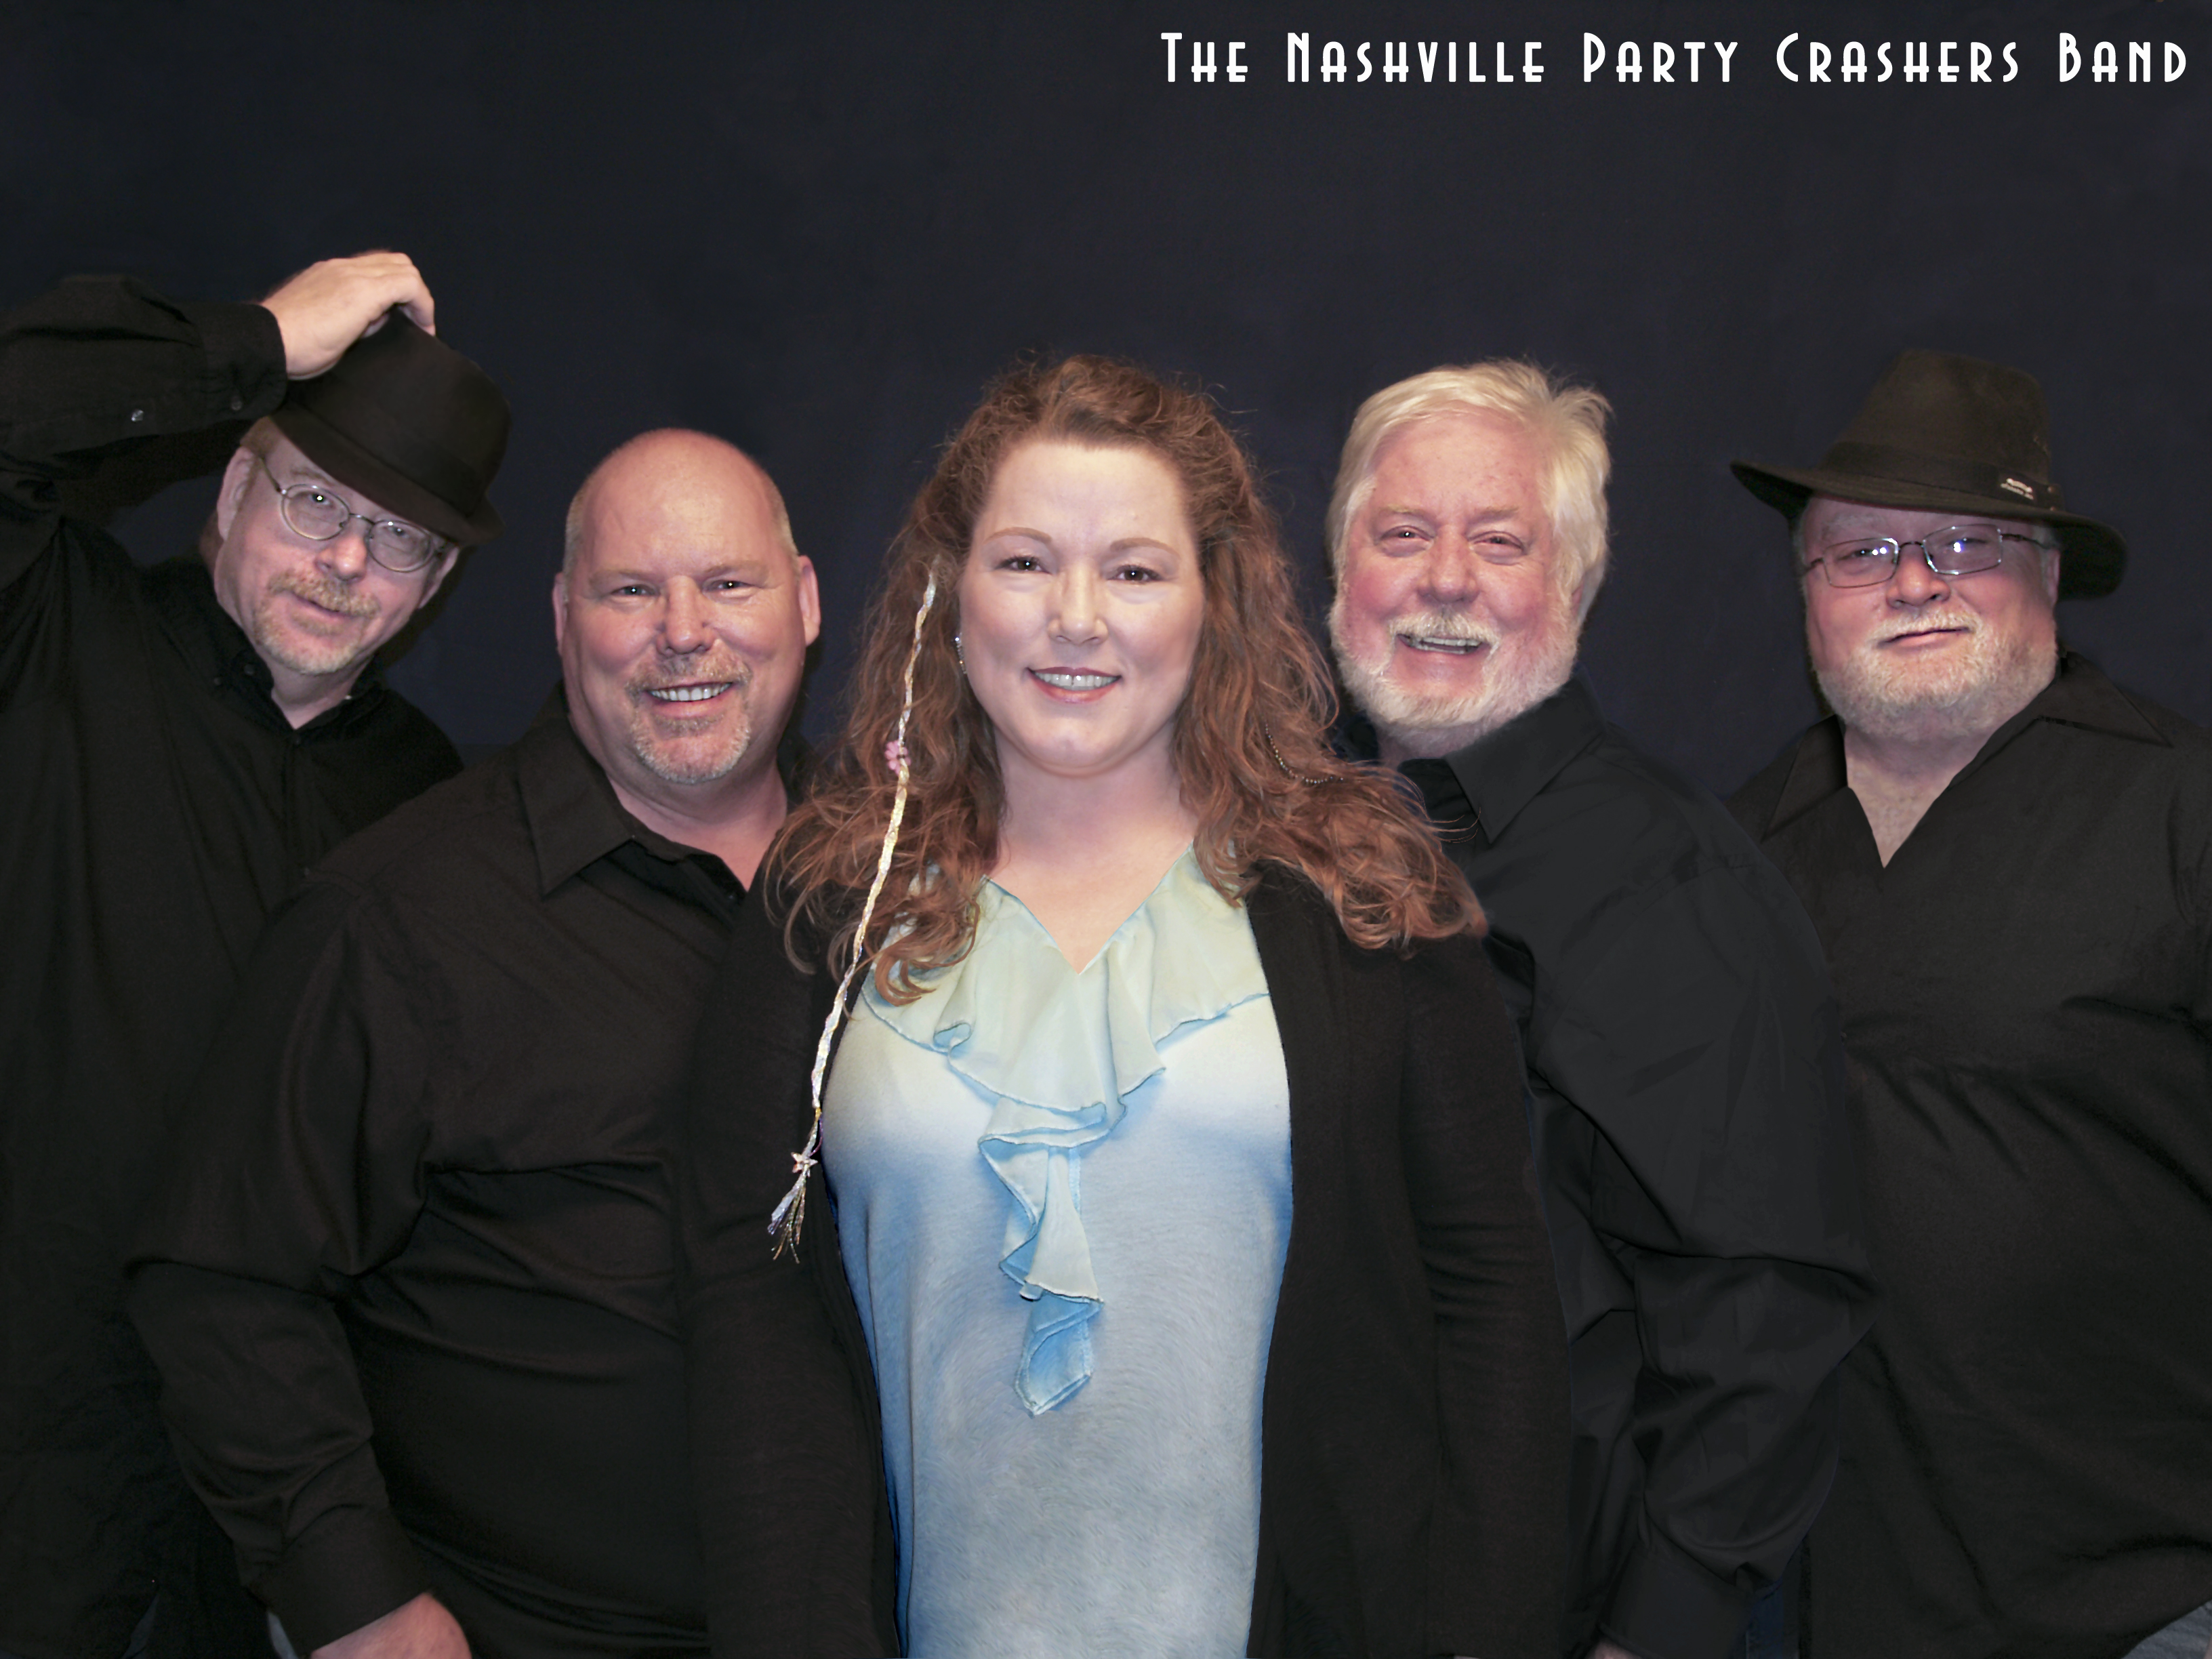 The Nashville Party Crashers Band